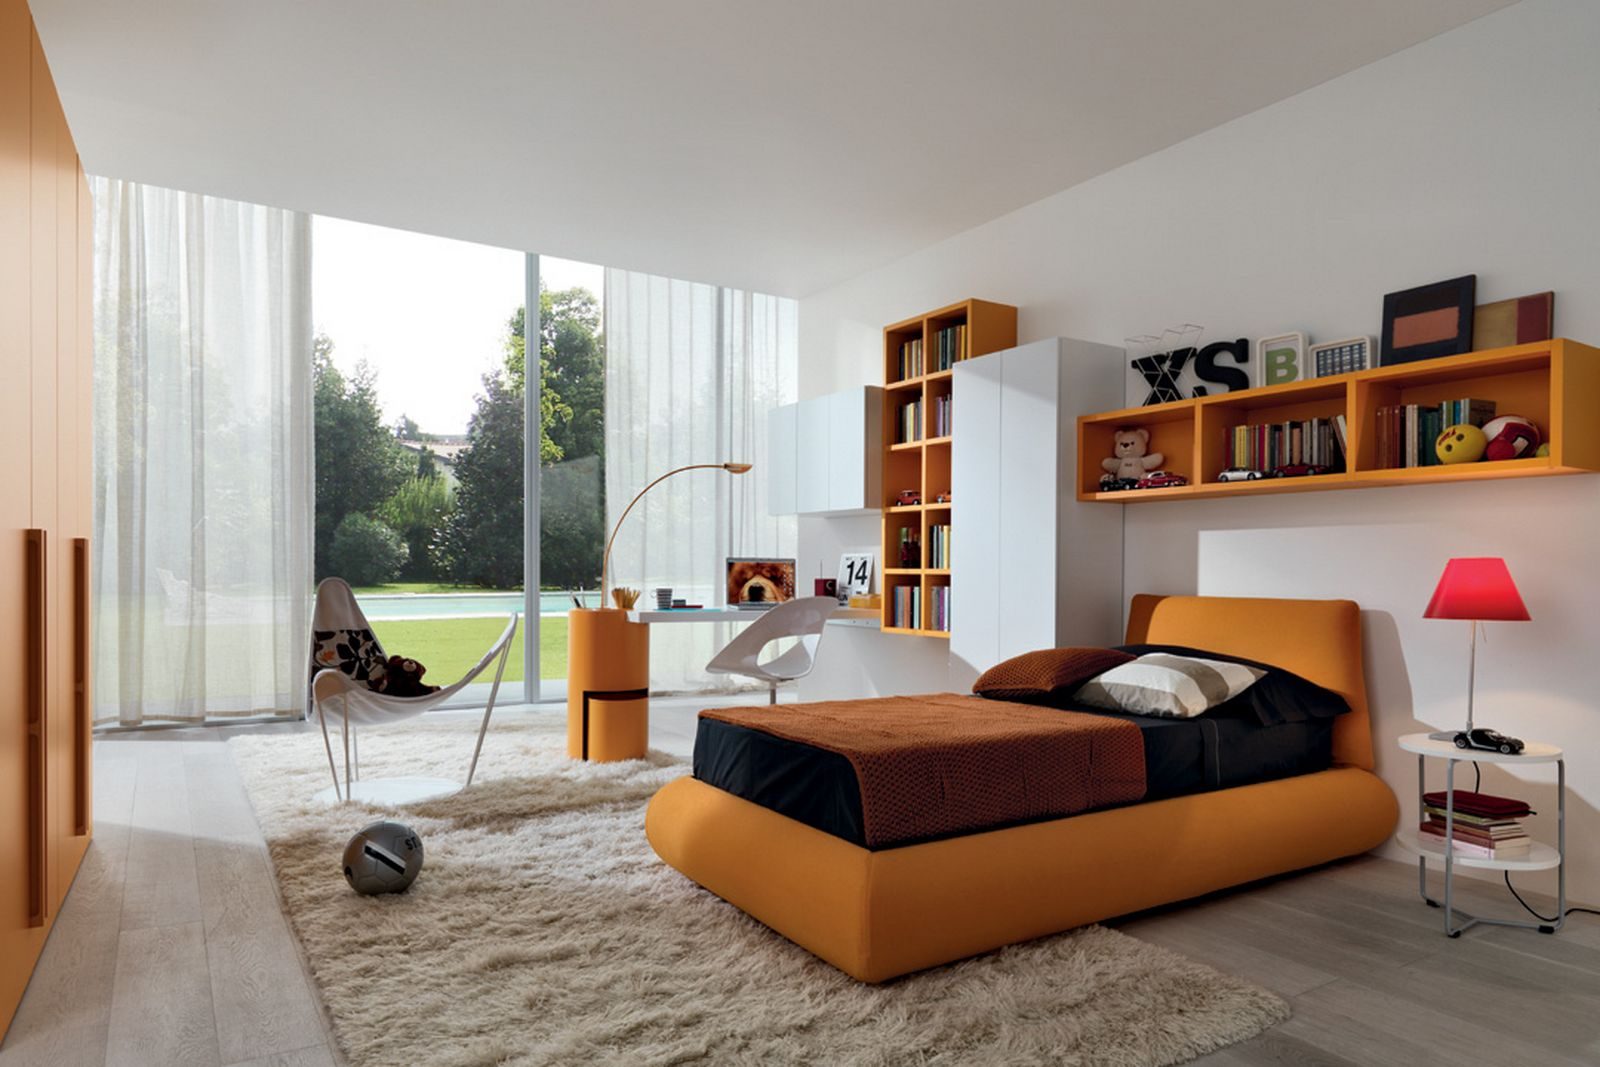 Dormitorio con accesorios naranjas